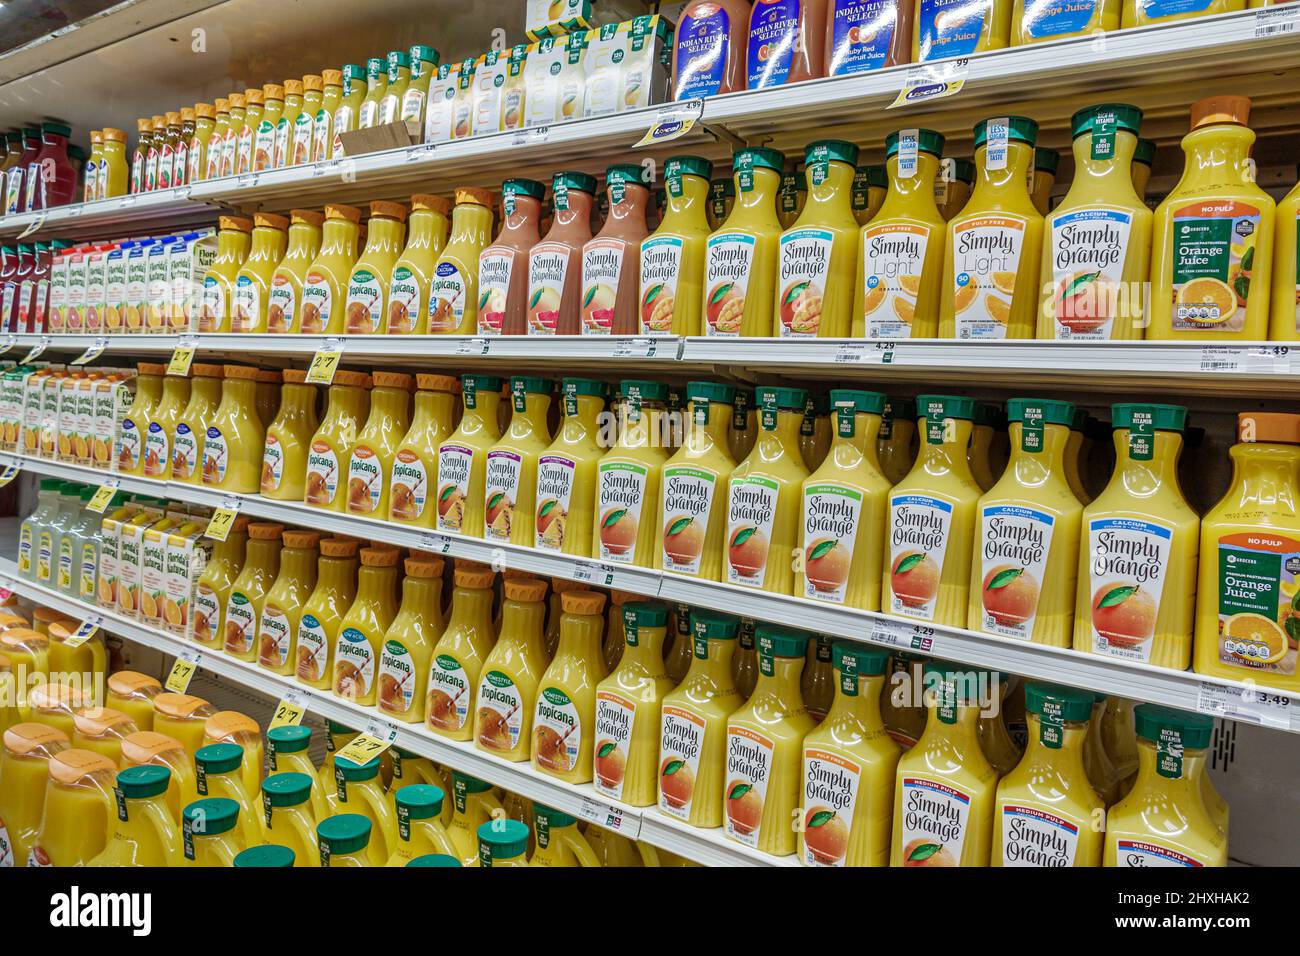 Miami Florida Winn-Dixie tienda de comestibles supermercado dentro de la exposición interior venta botellas de jugo de naranja simplemente naranja Foto de stock